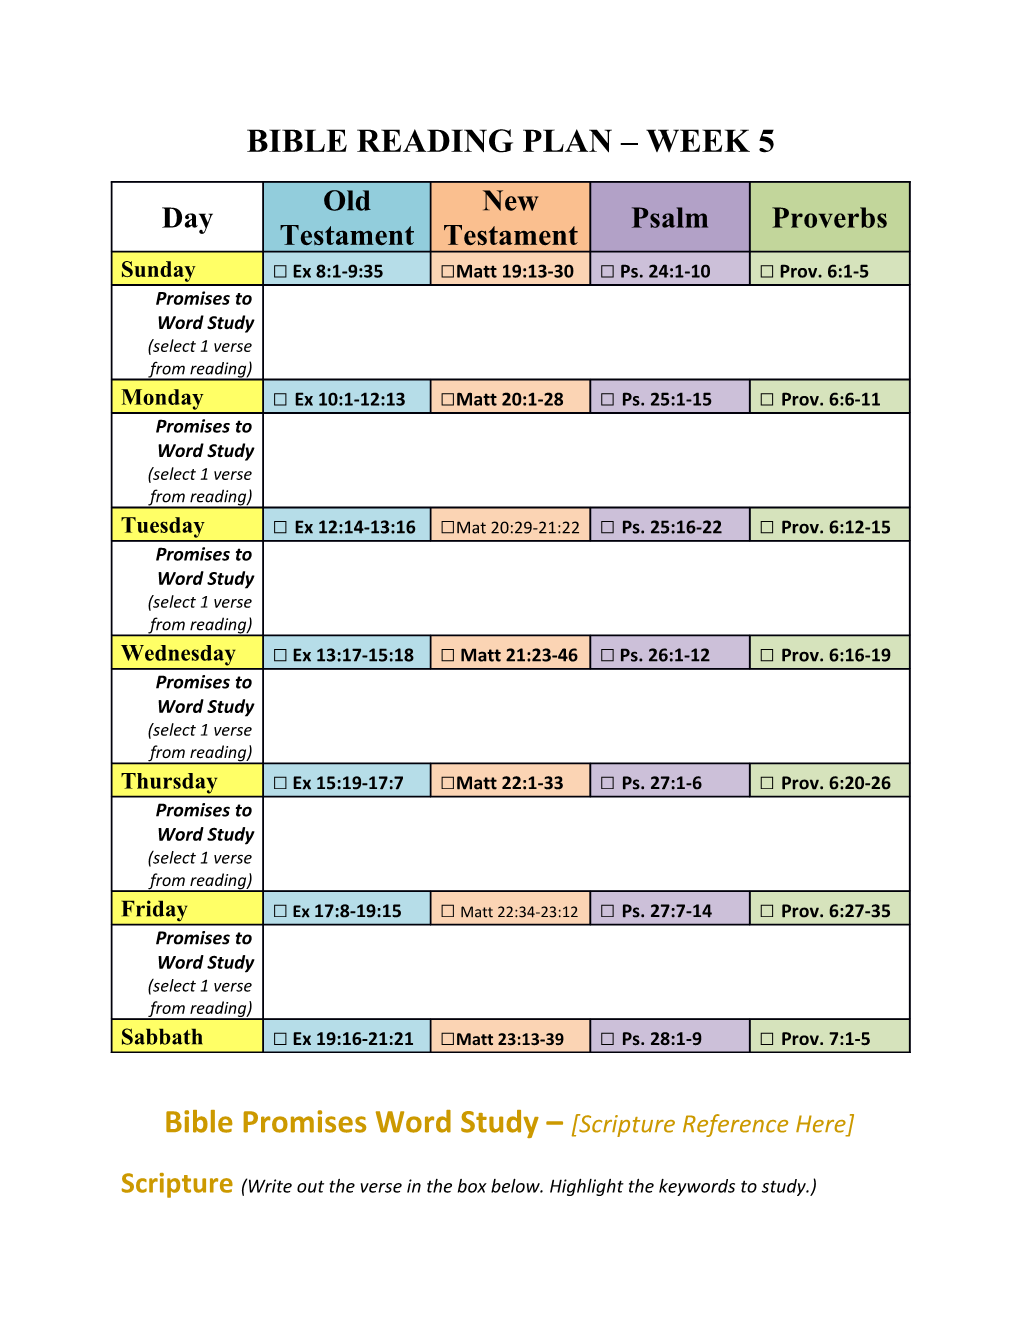 Bible Reading Plan Week 5